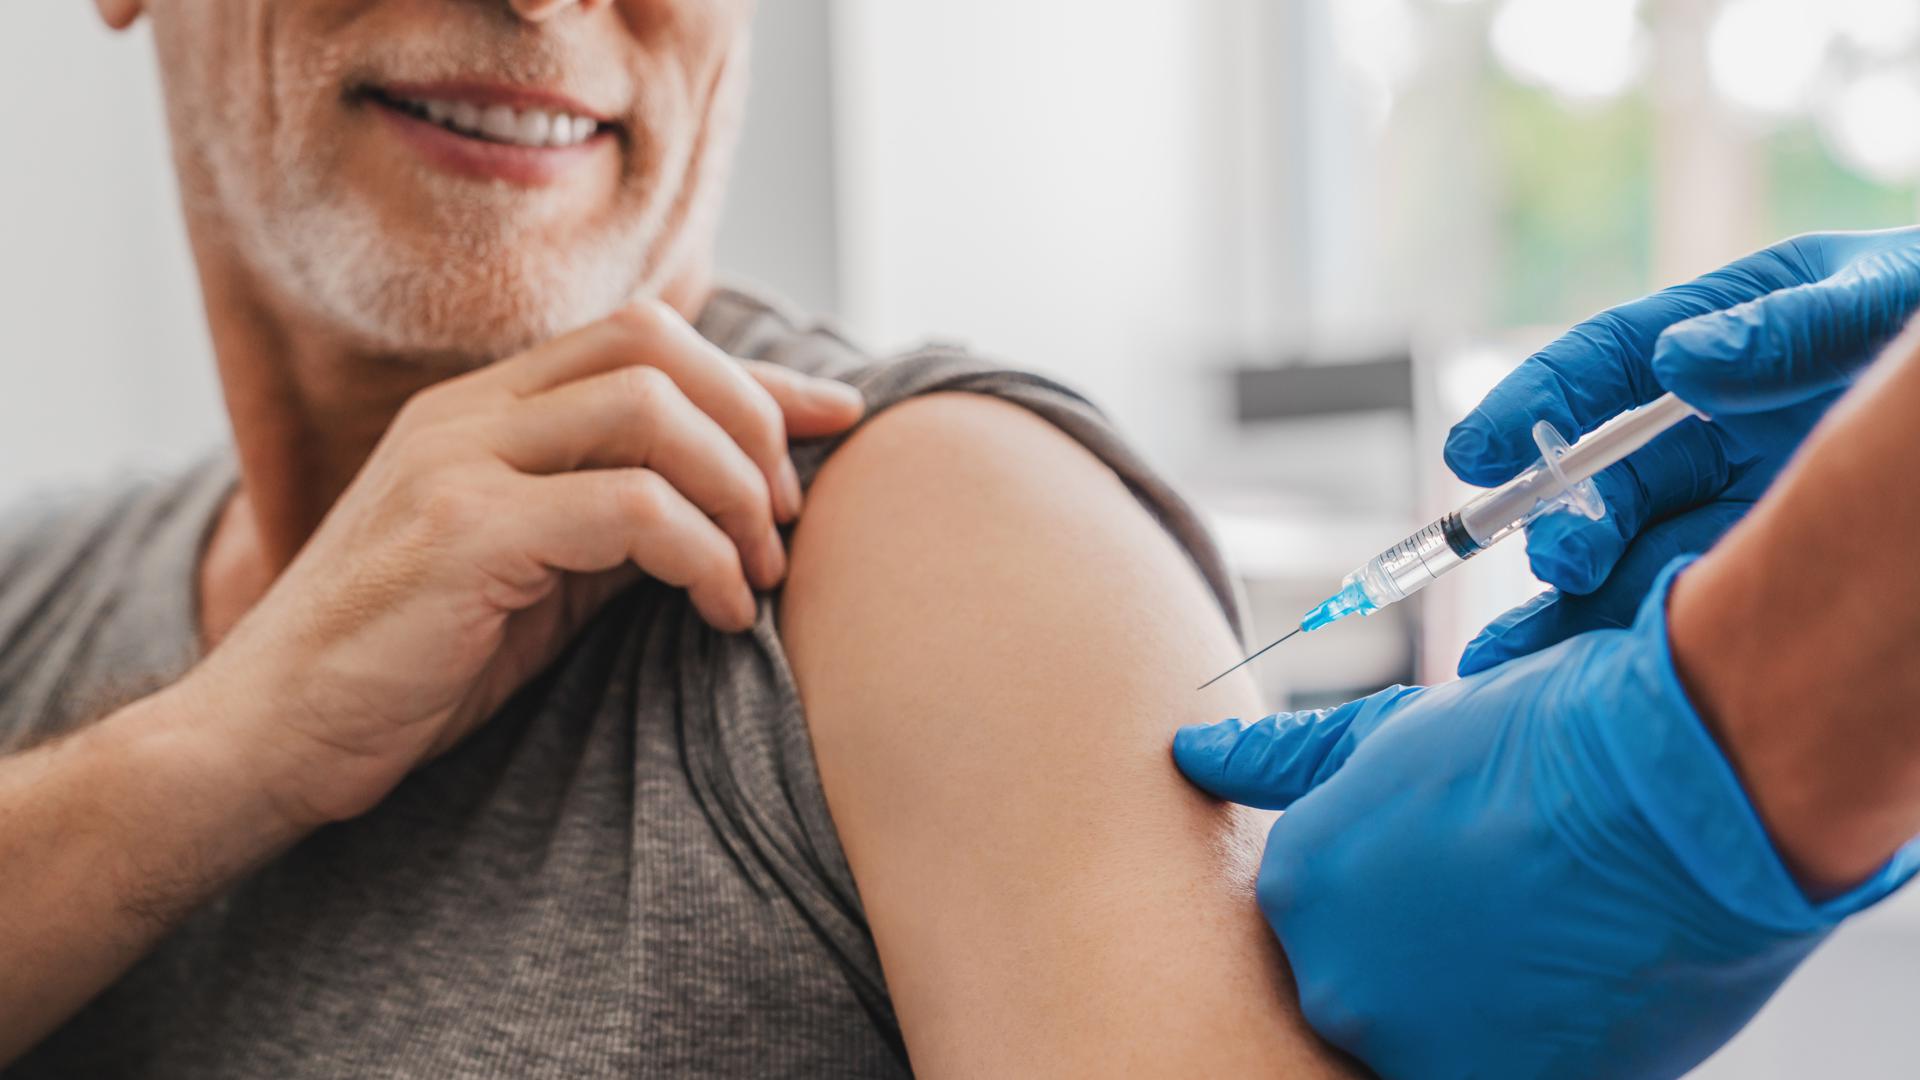 Impfstoffe gegen die Grippe (Influenza) sind in zahlreichen Studien getestet und haben sich in millionenfacher Anwendung bewährt.